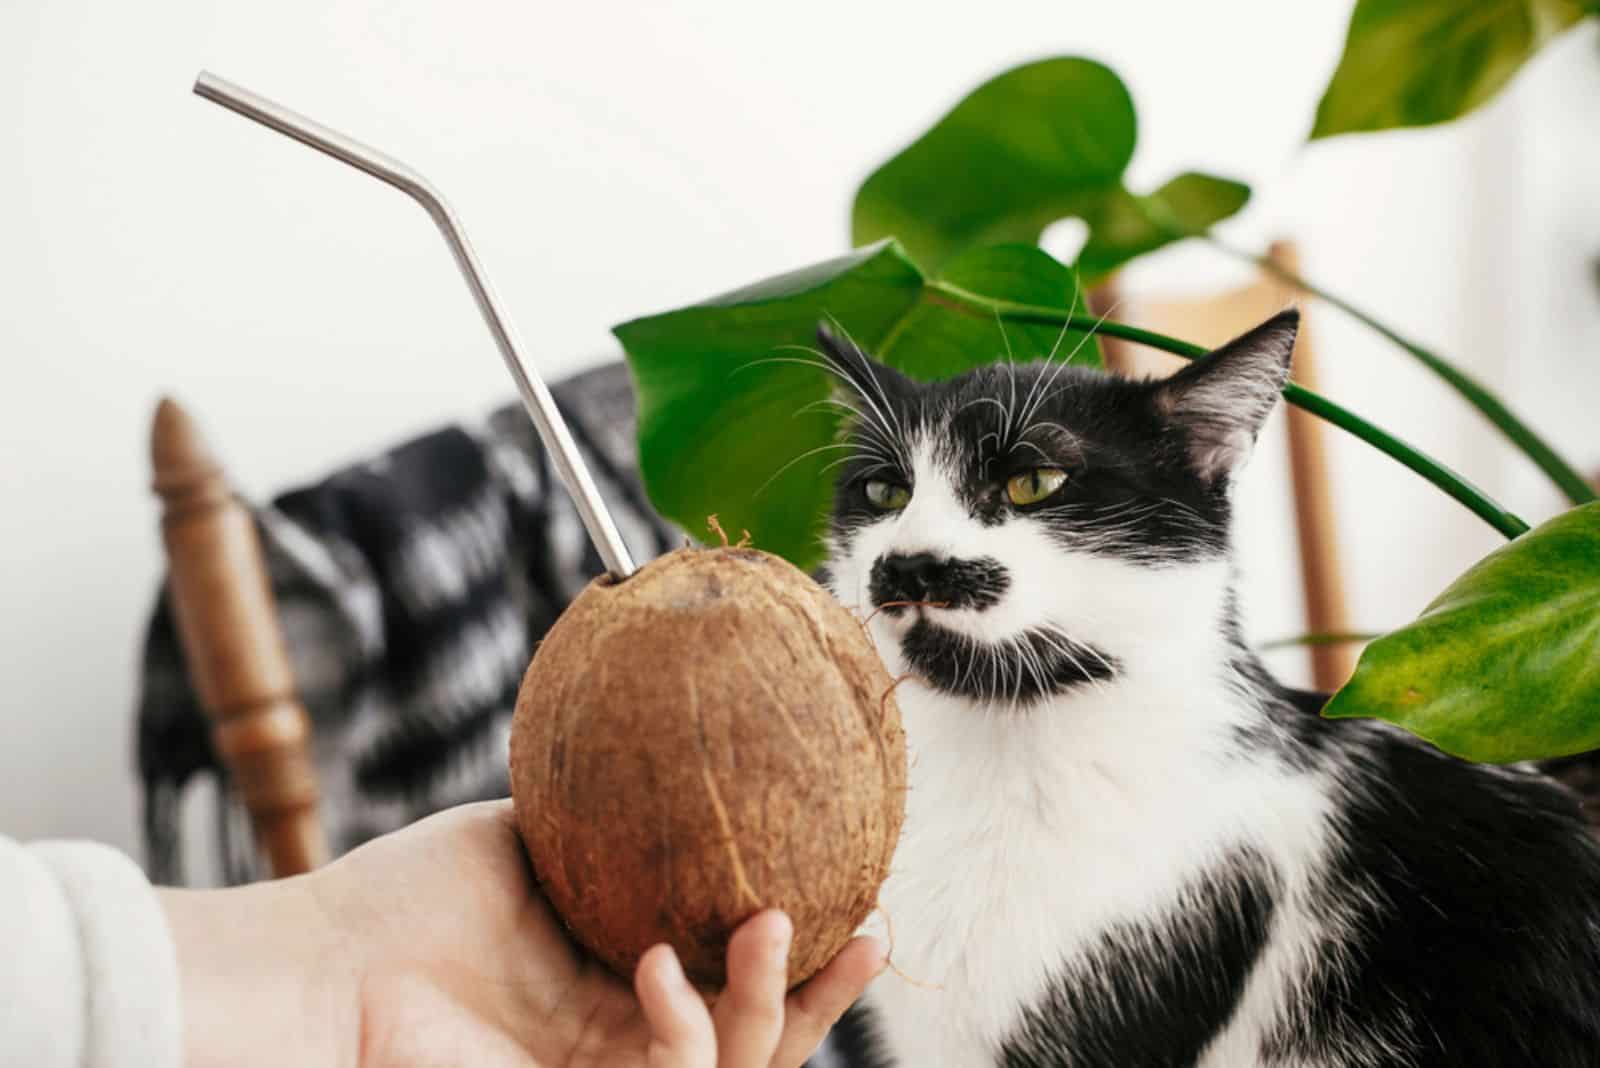 Grappige schattige kat die kokosnoot ruikt en proeft met metalen rietje in de hand